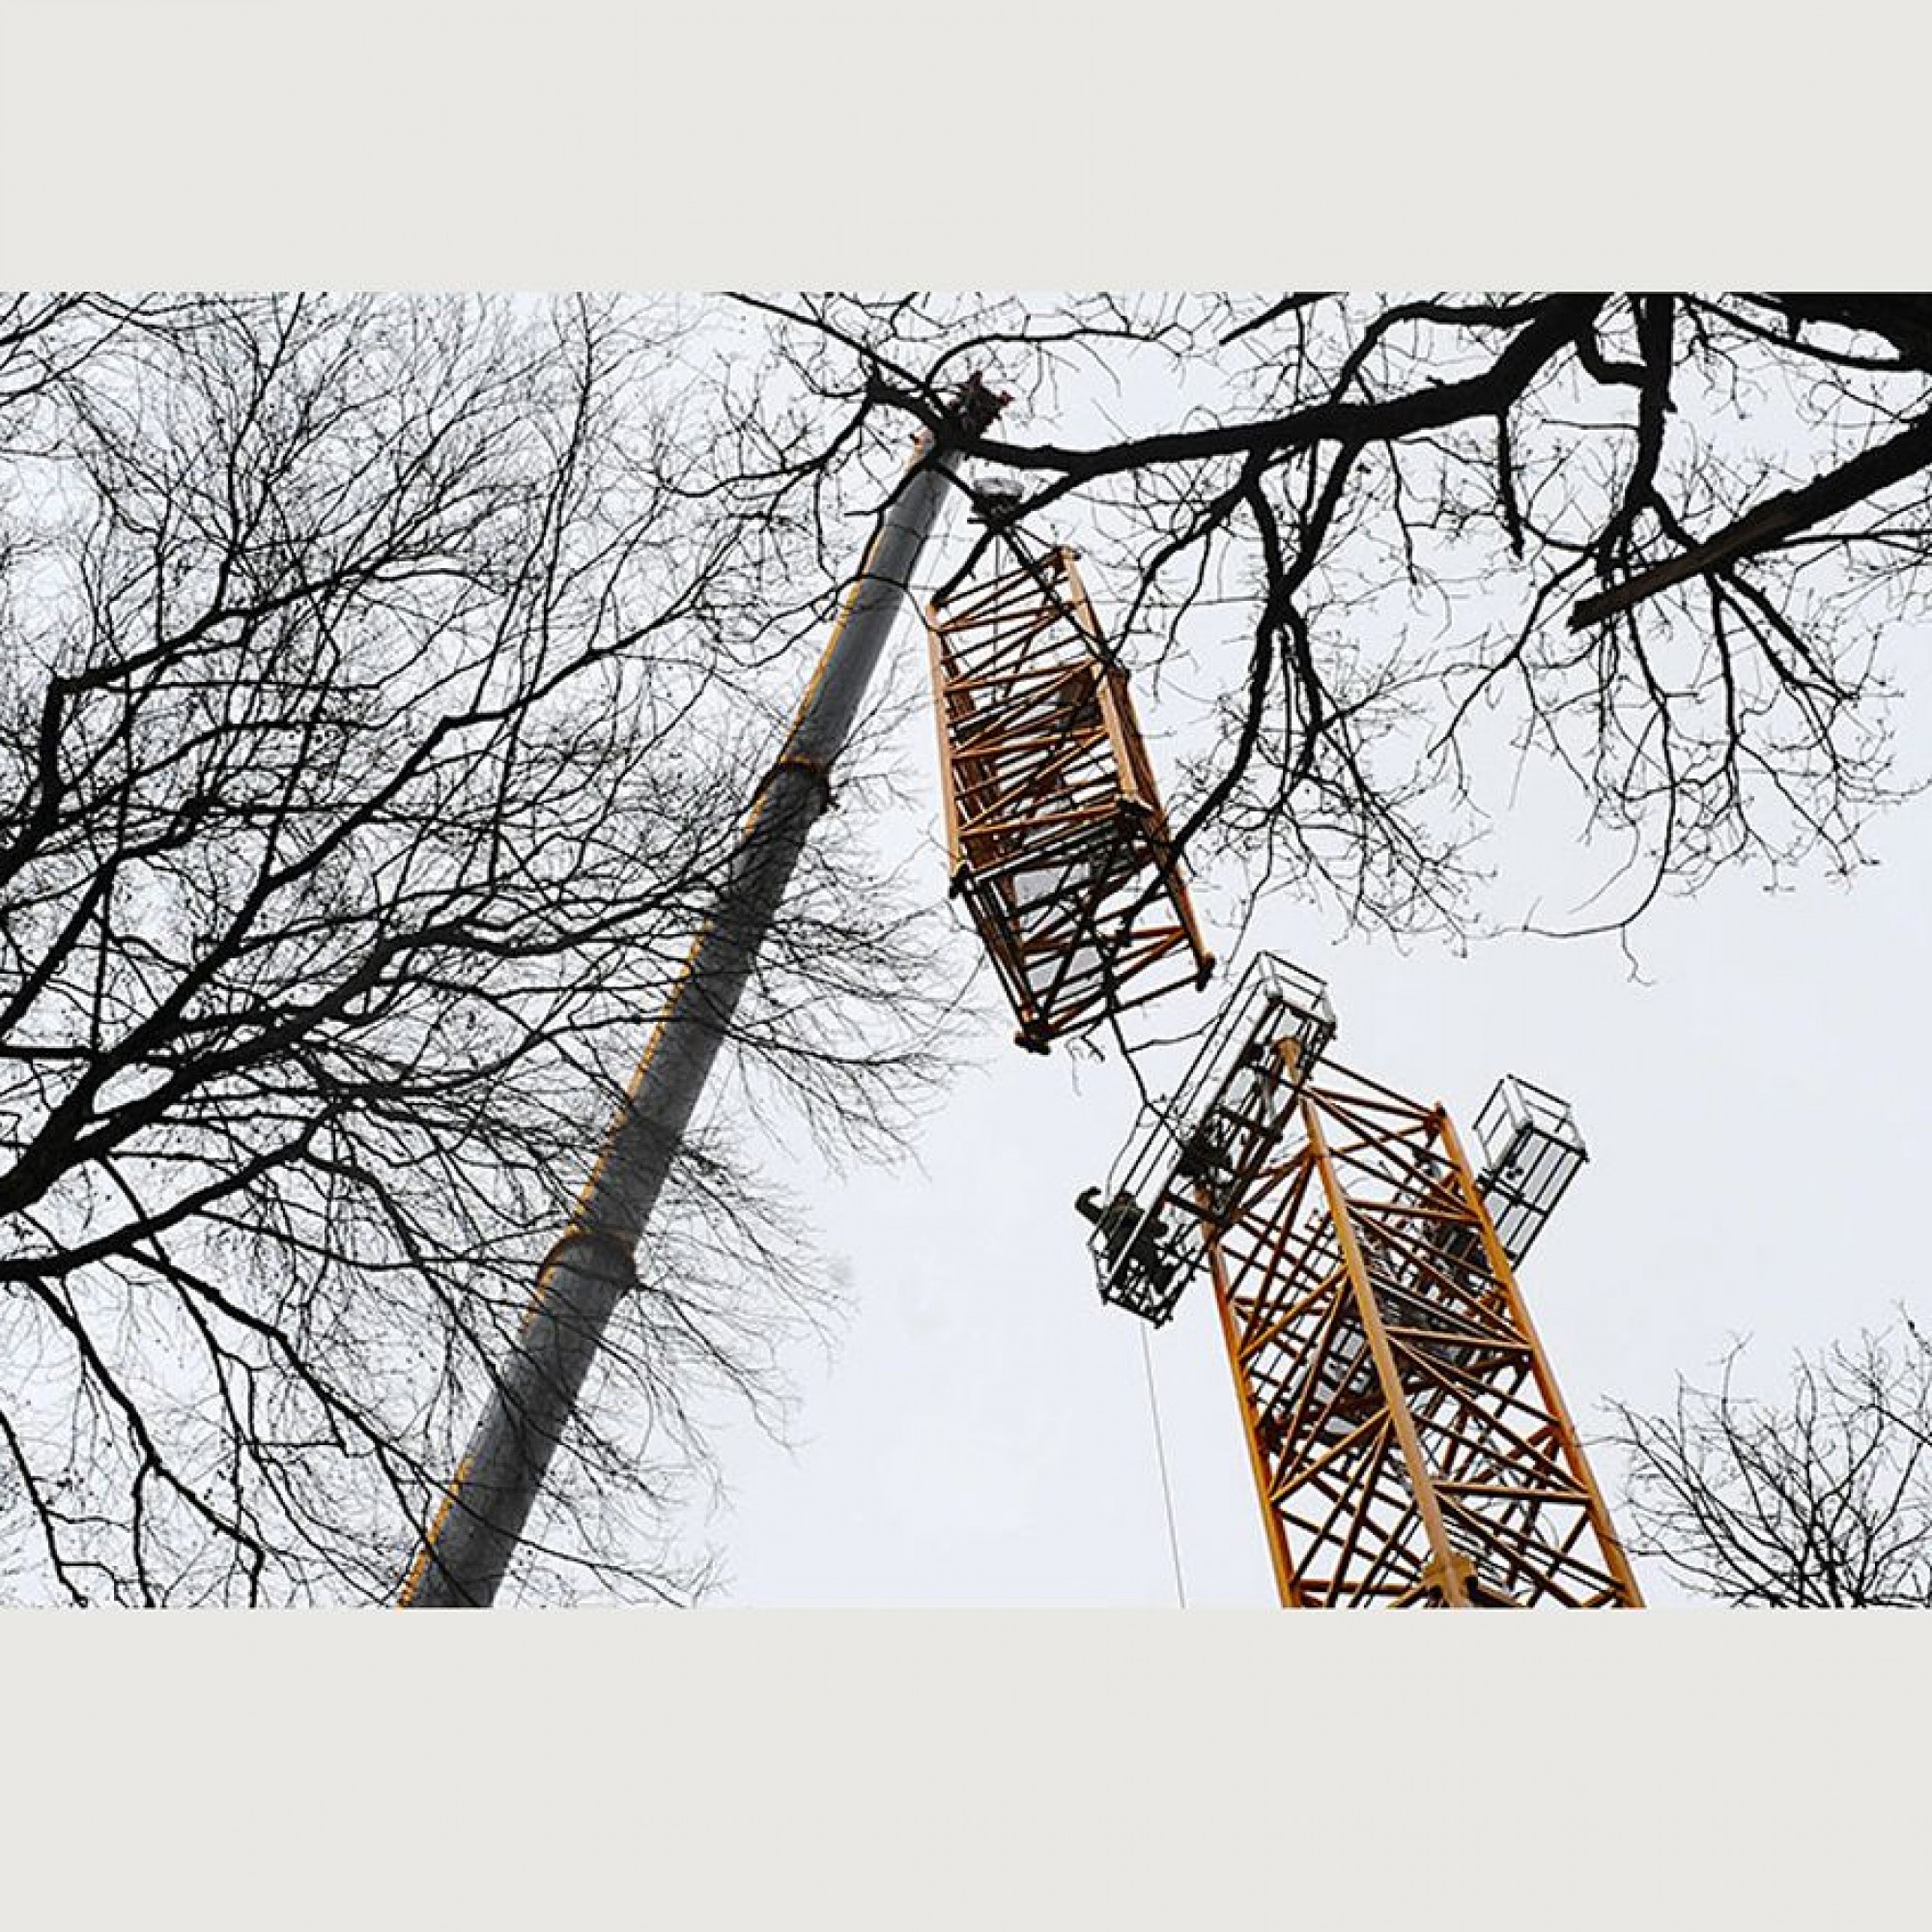 Auftakt zu einem 20 Jahre dauernden Waldexperiment: In Hölstein BL wird ein 50 Meter hoher Baukran installiert. Er erlaubt es den Wissenschaftler, in den Baumkronen wissenschaftliche Experimente durchzuführen.